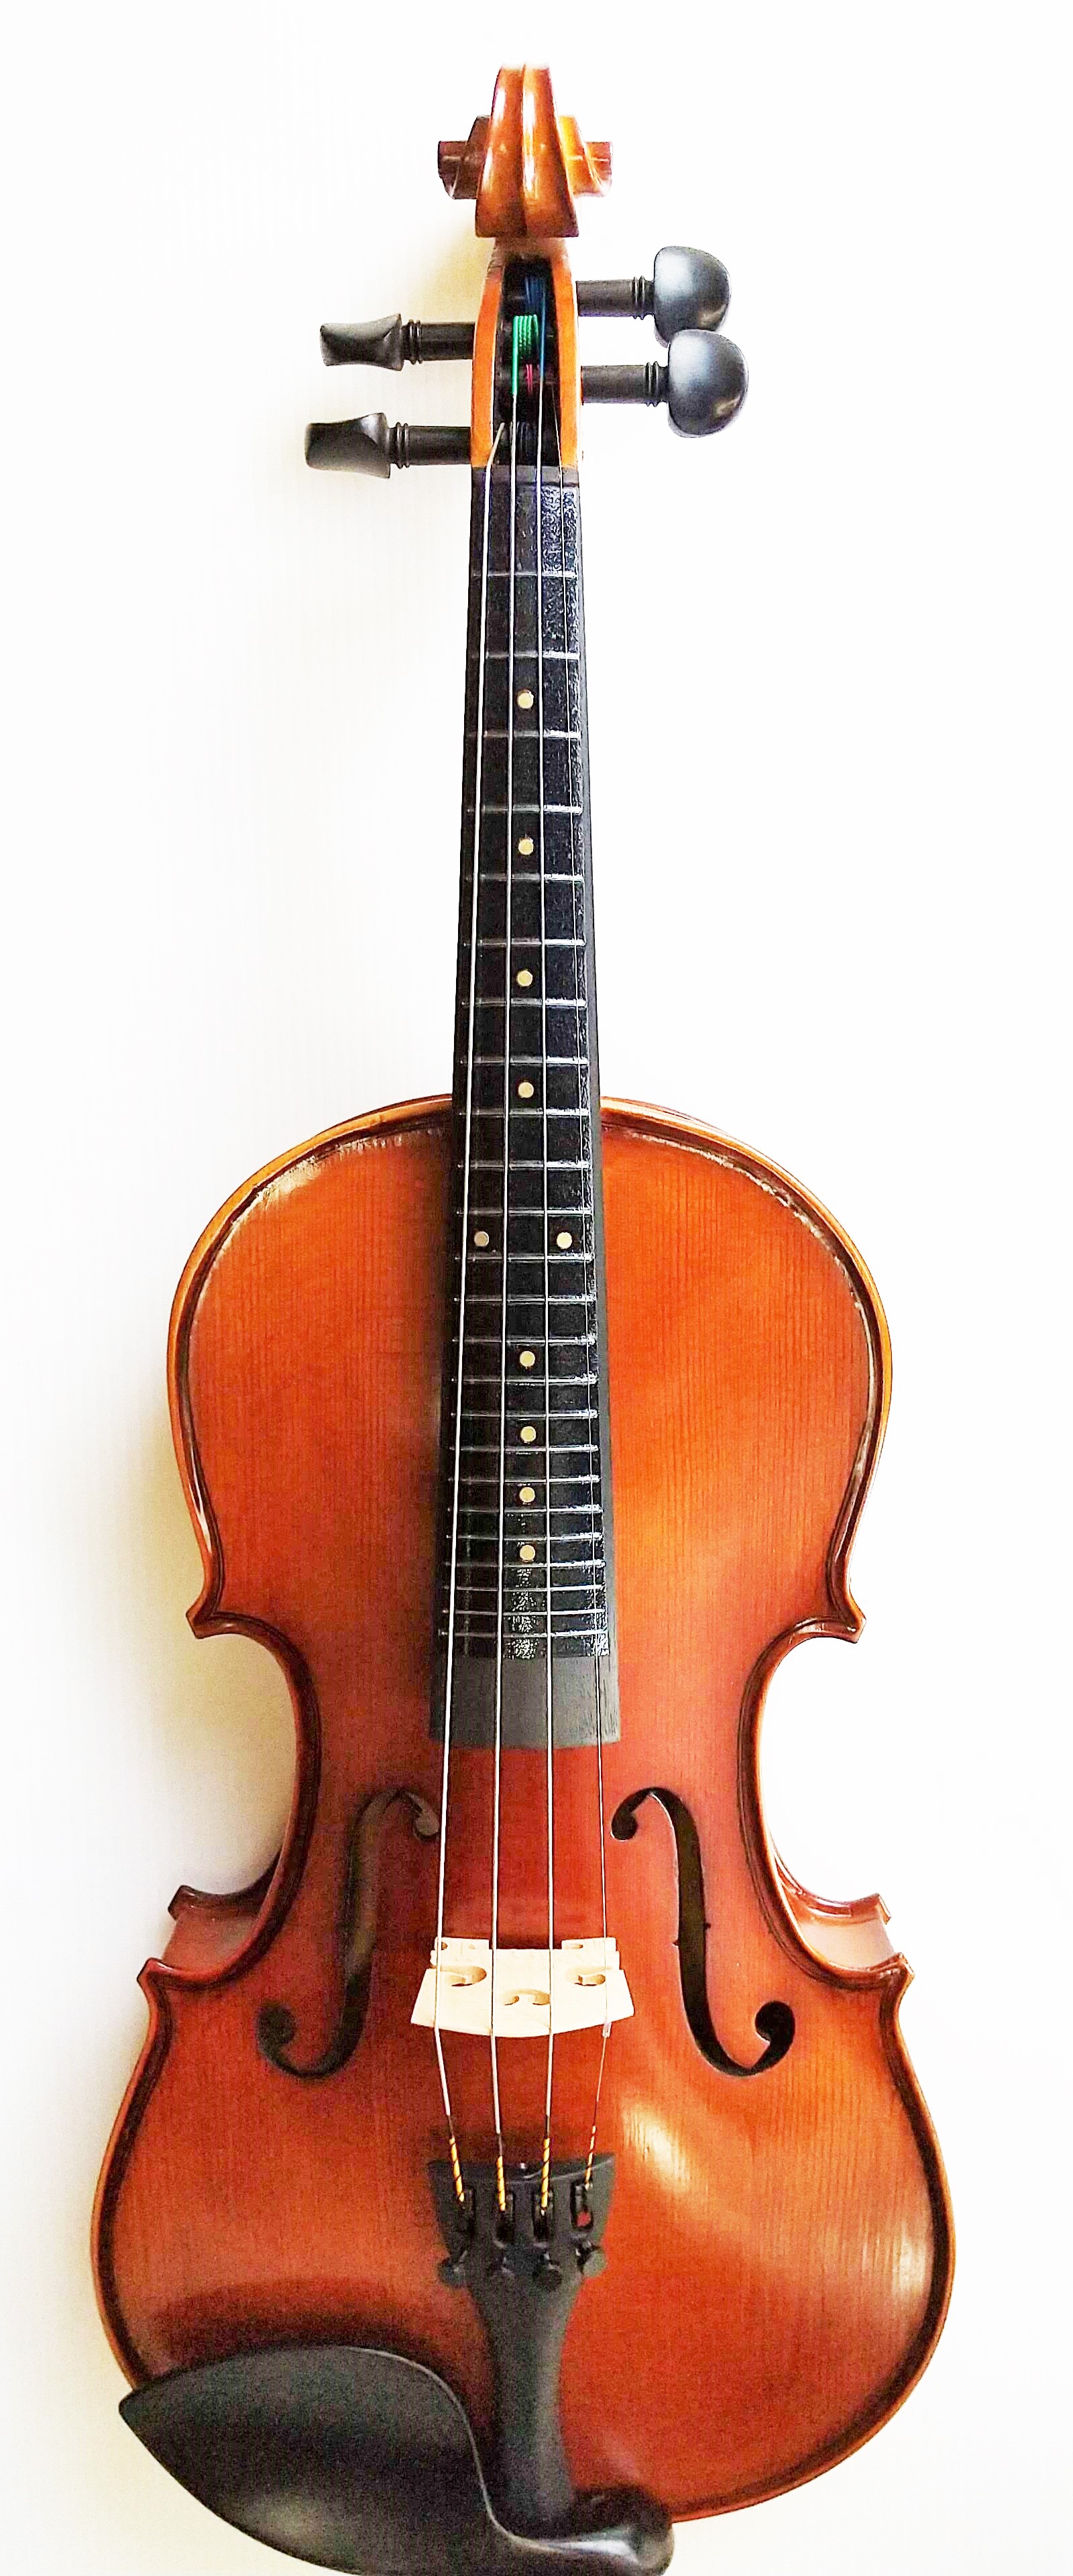 ことよりモール Pretorio 初めてでも簡単に弾ける フレット付きバイオリン セット PV-200F 4/4サイズ (ポジションマークあり)